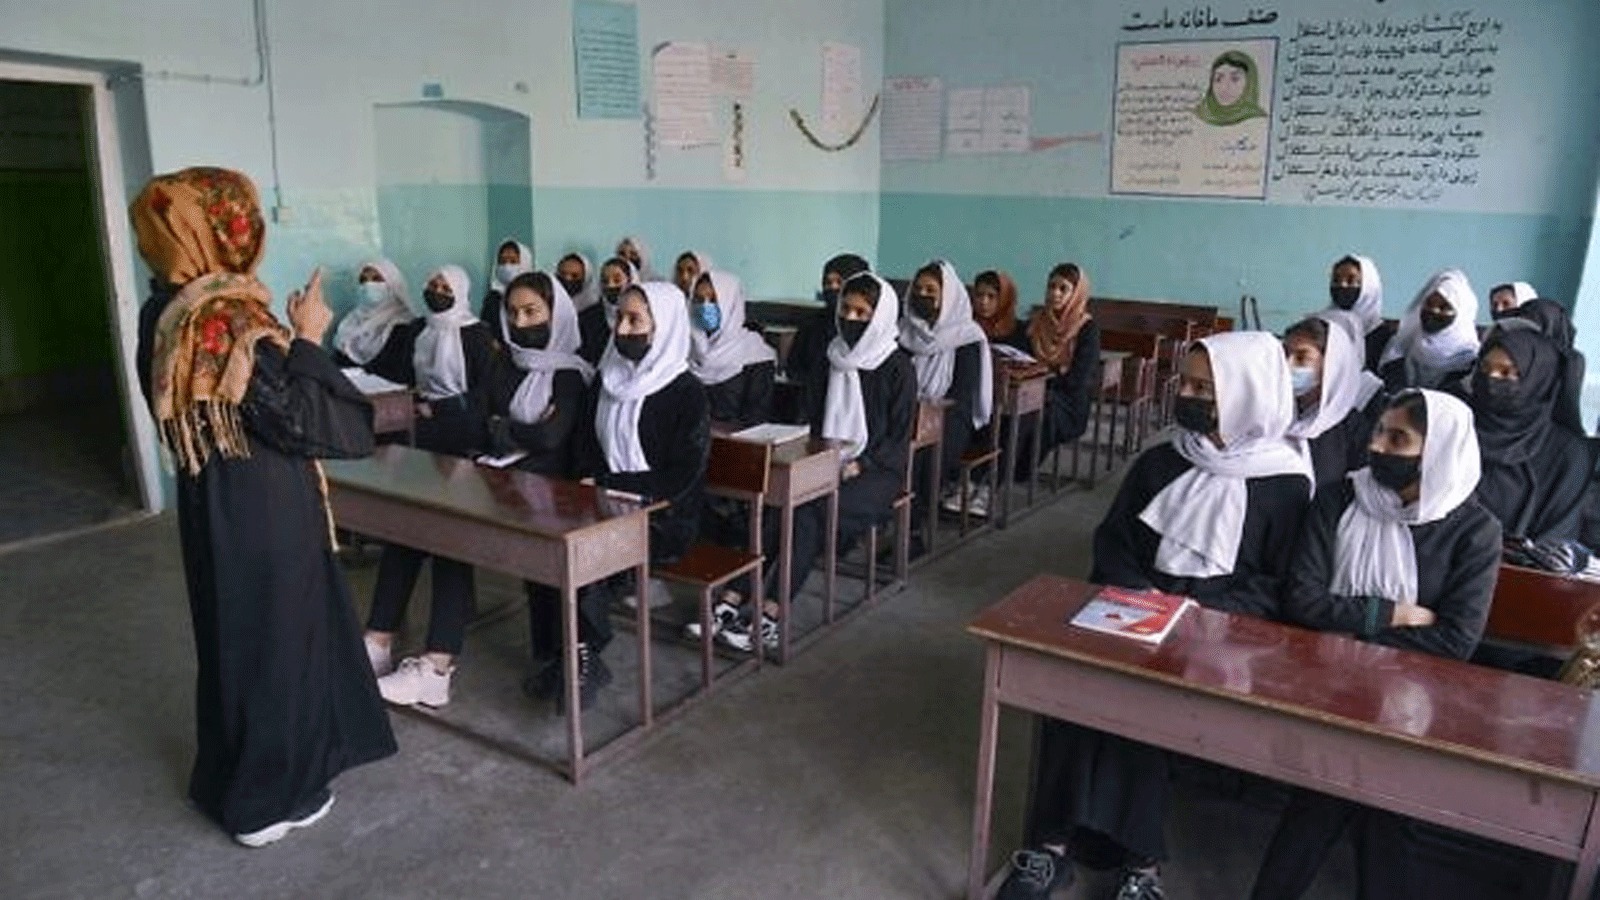 فتيات يحضرن صفًا بعد إعادة افتتاح مدرستهن في كابول، أفغانستان، في 23 آذار\مارس 2022 